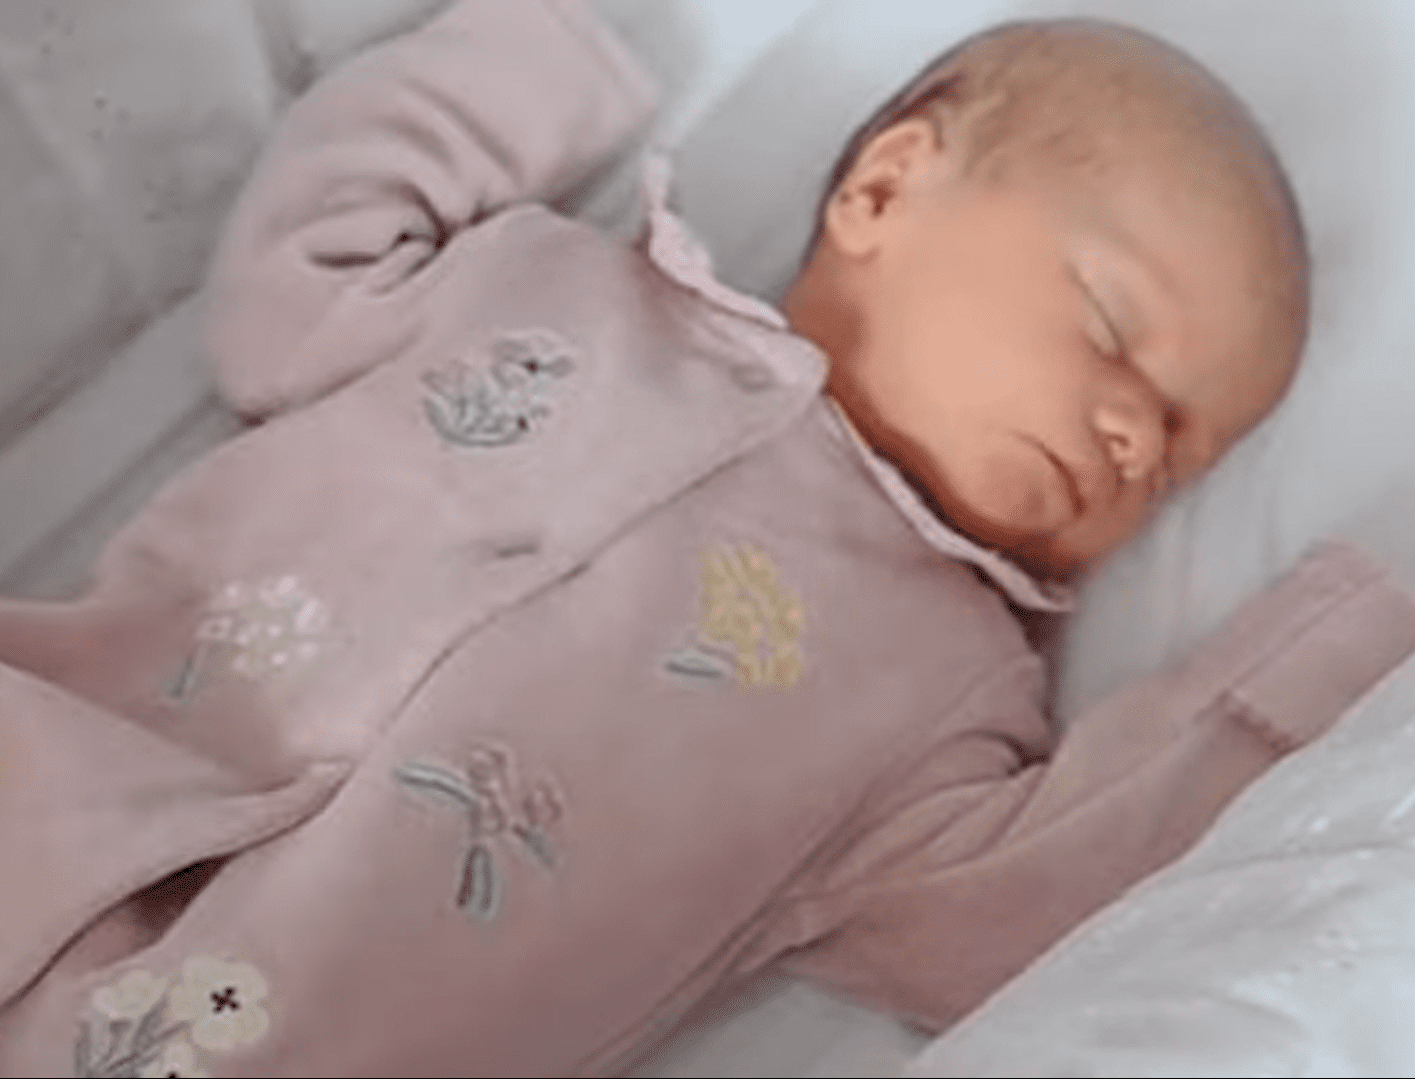 Baby Baylee-Rae sleeping.  |  Source: youtube.com/WalesOnline